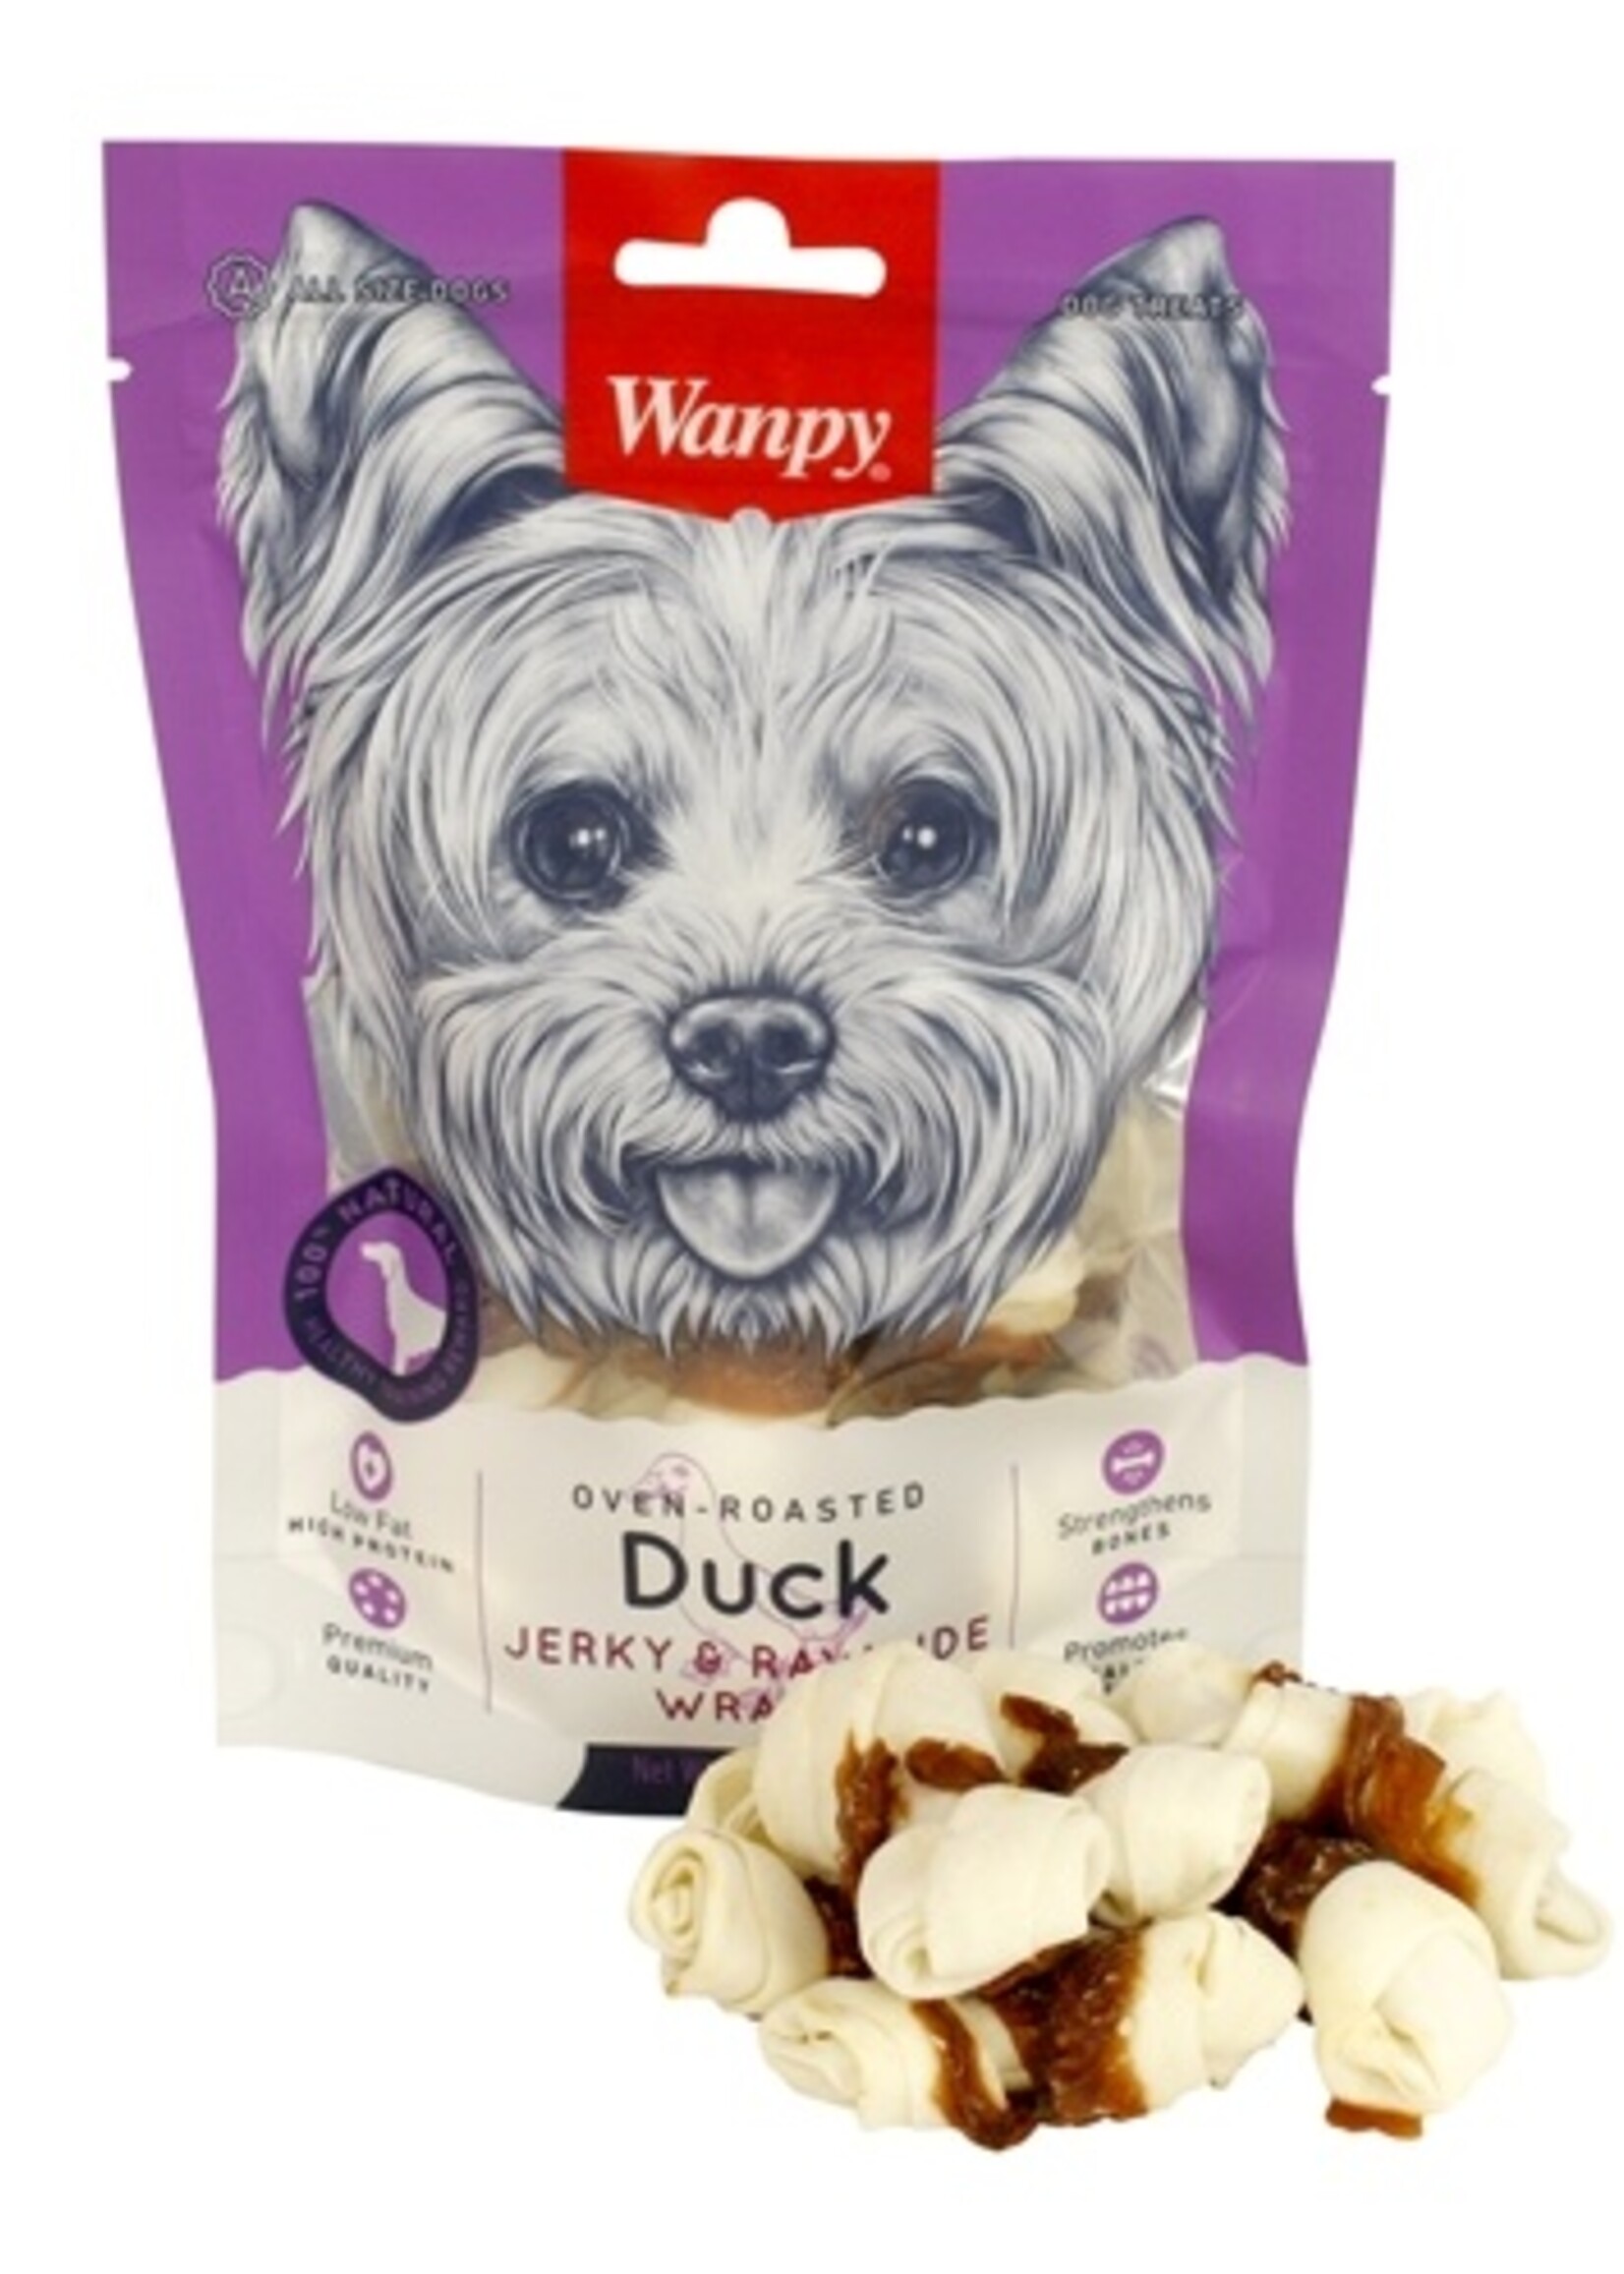 Wanpy Wanpy oven-roasted duck jerky / rawhide wraps